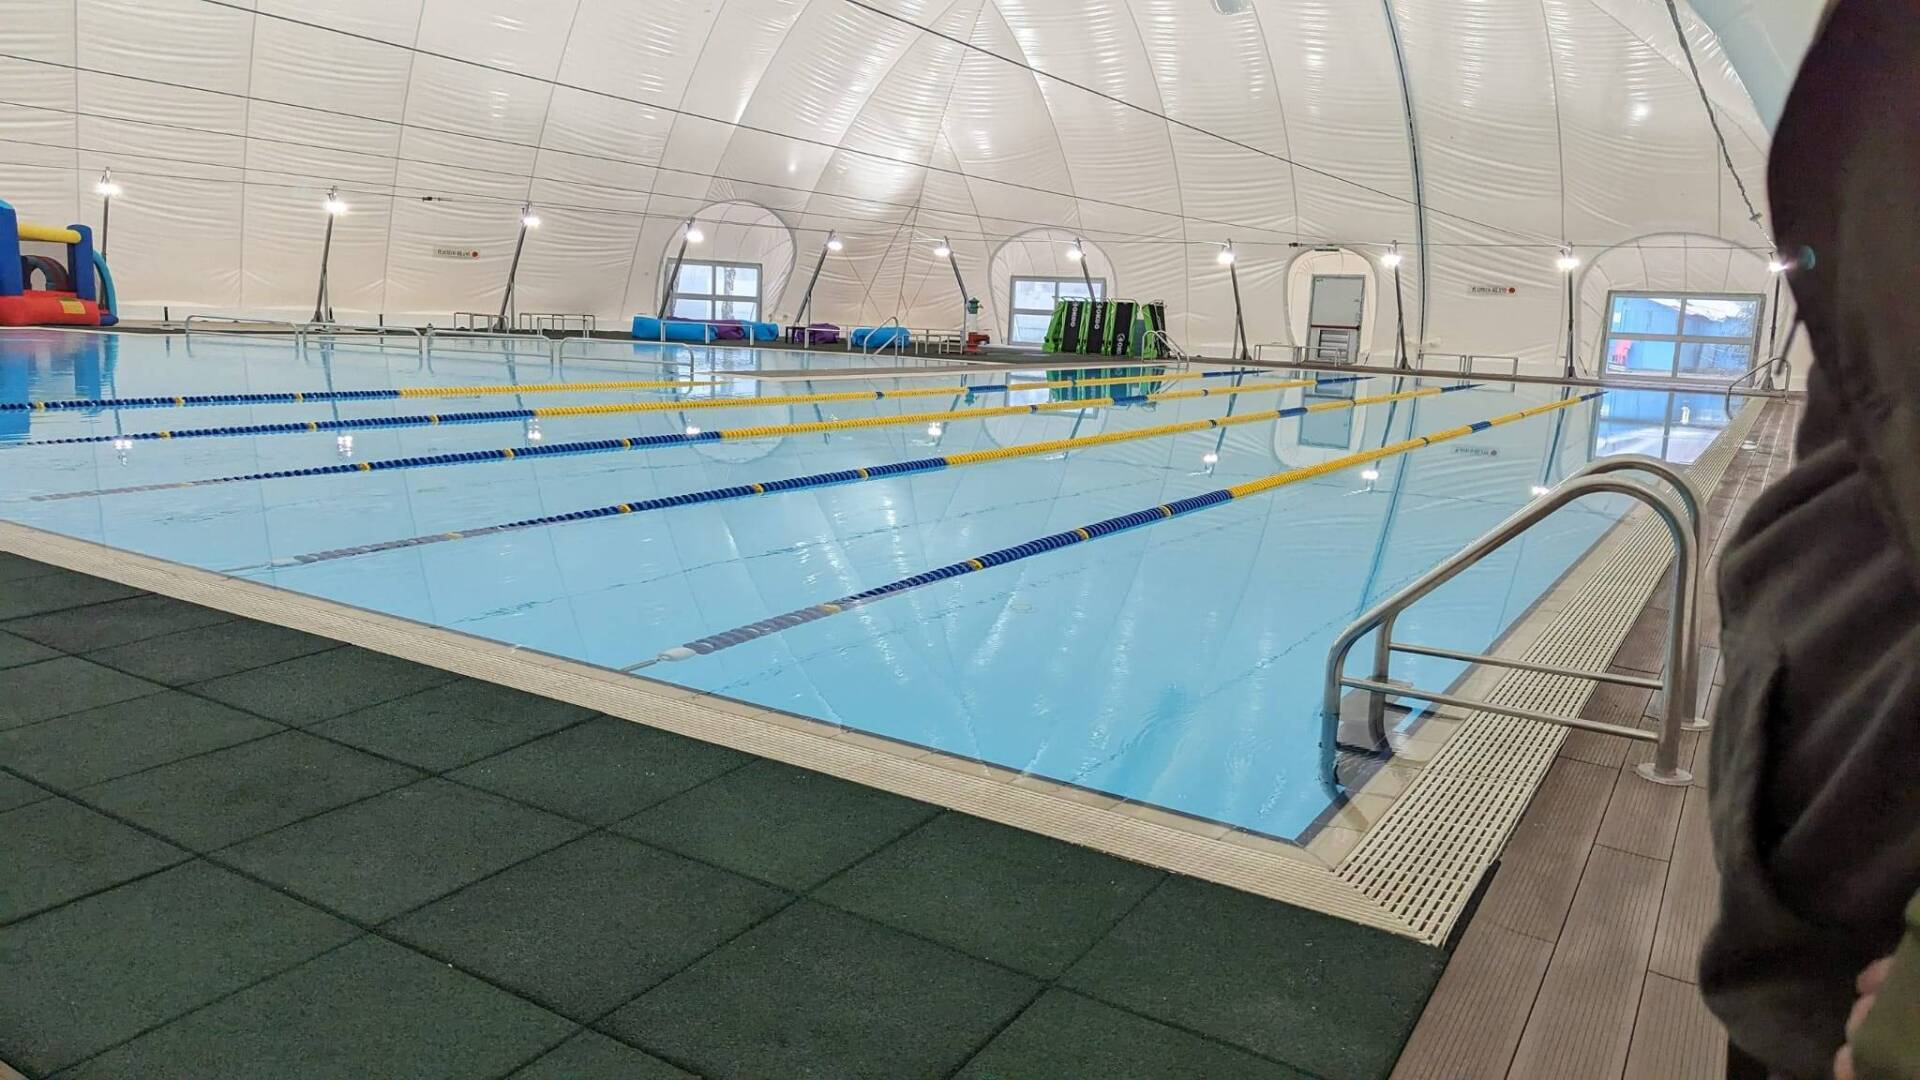 Ieri a Saronno: inaugurata “nuova” piscina coperta, auto ribaltata a Rovello, super nebbia in città